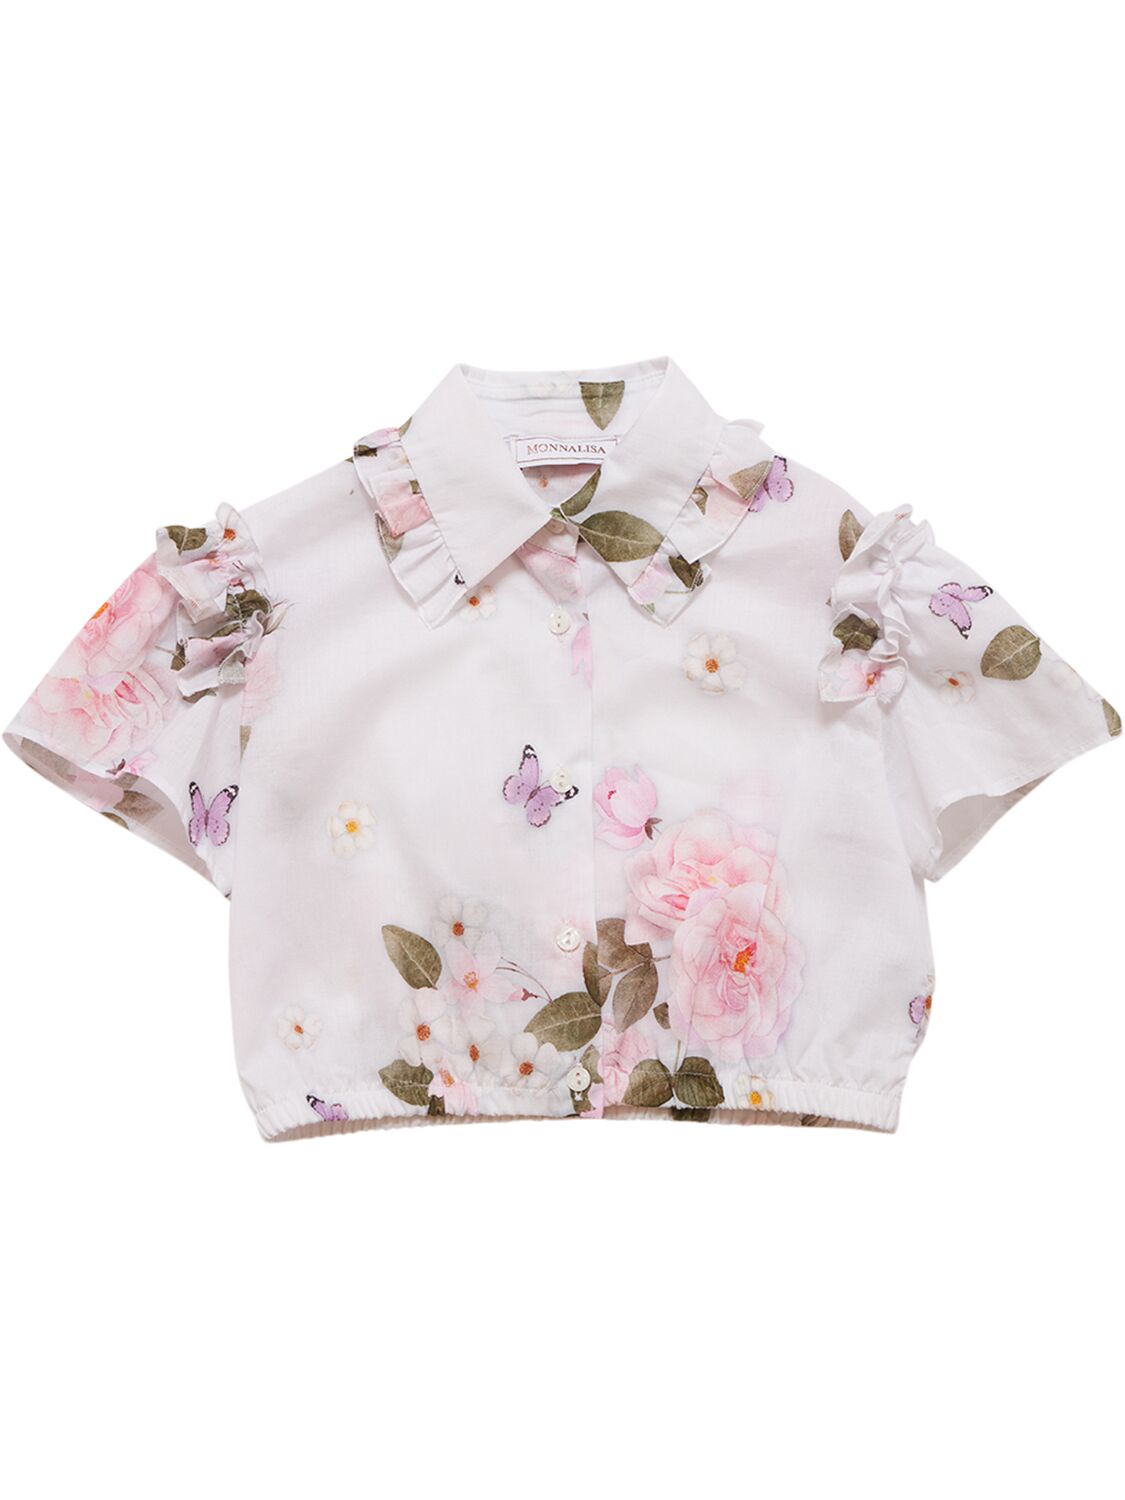 Monnalisa Kids' Printed Cotton Muslin Crop Shirt In Pink,multi